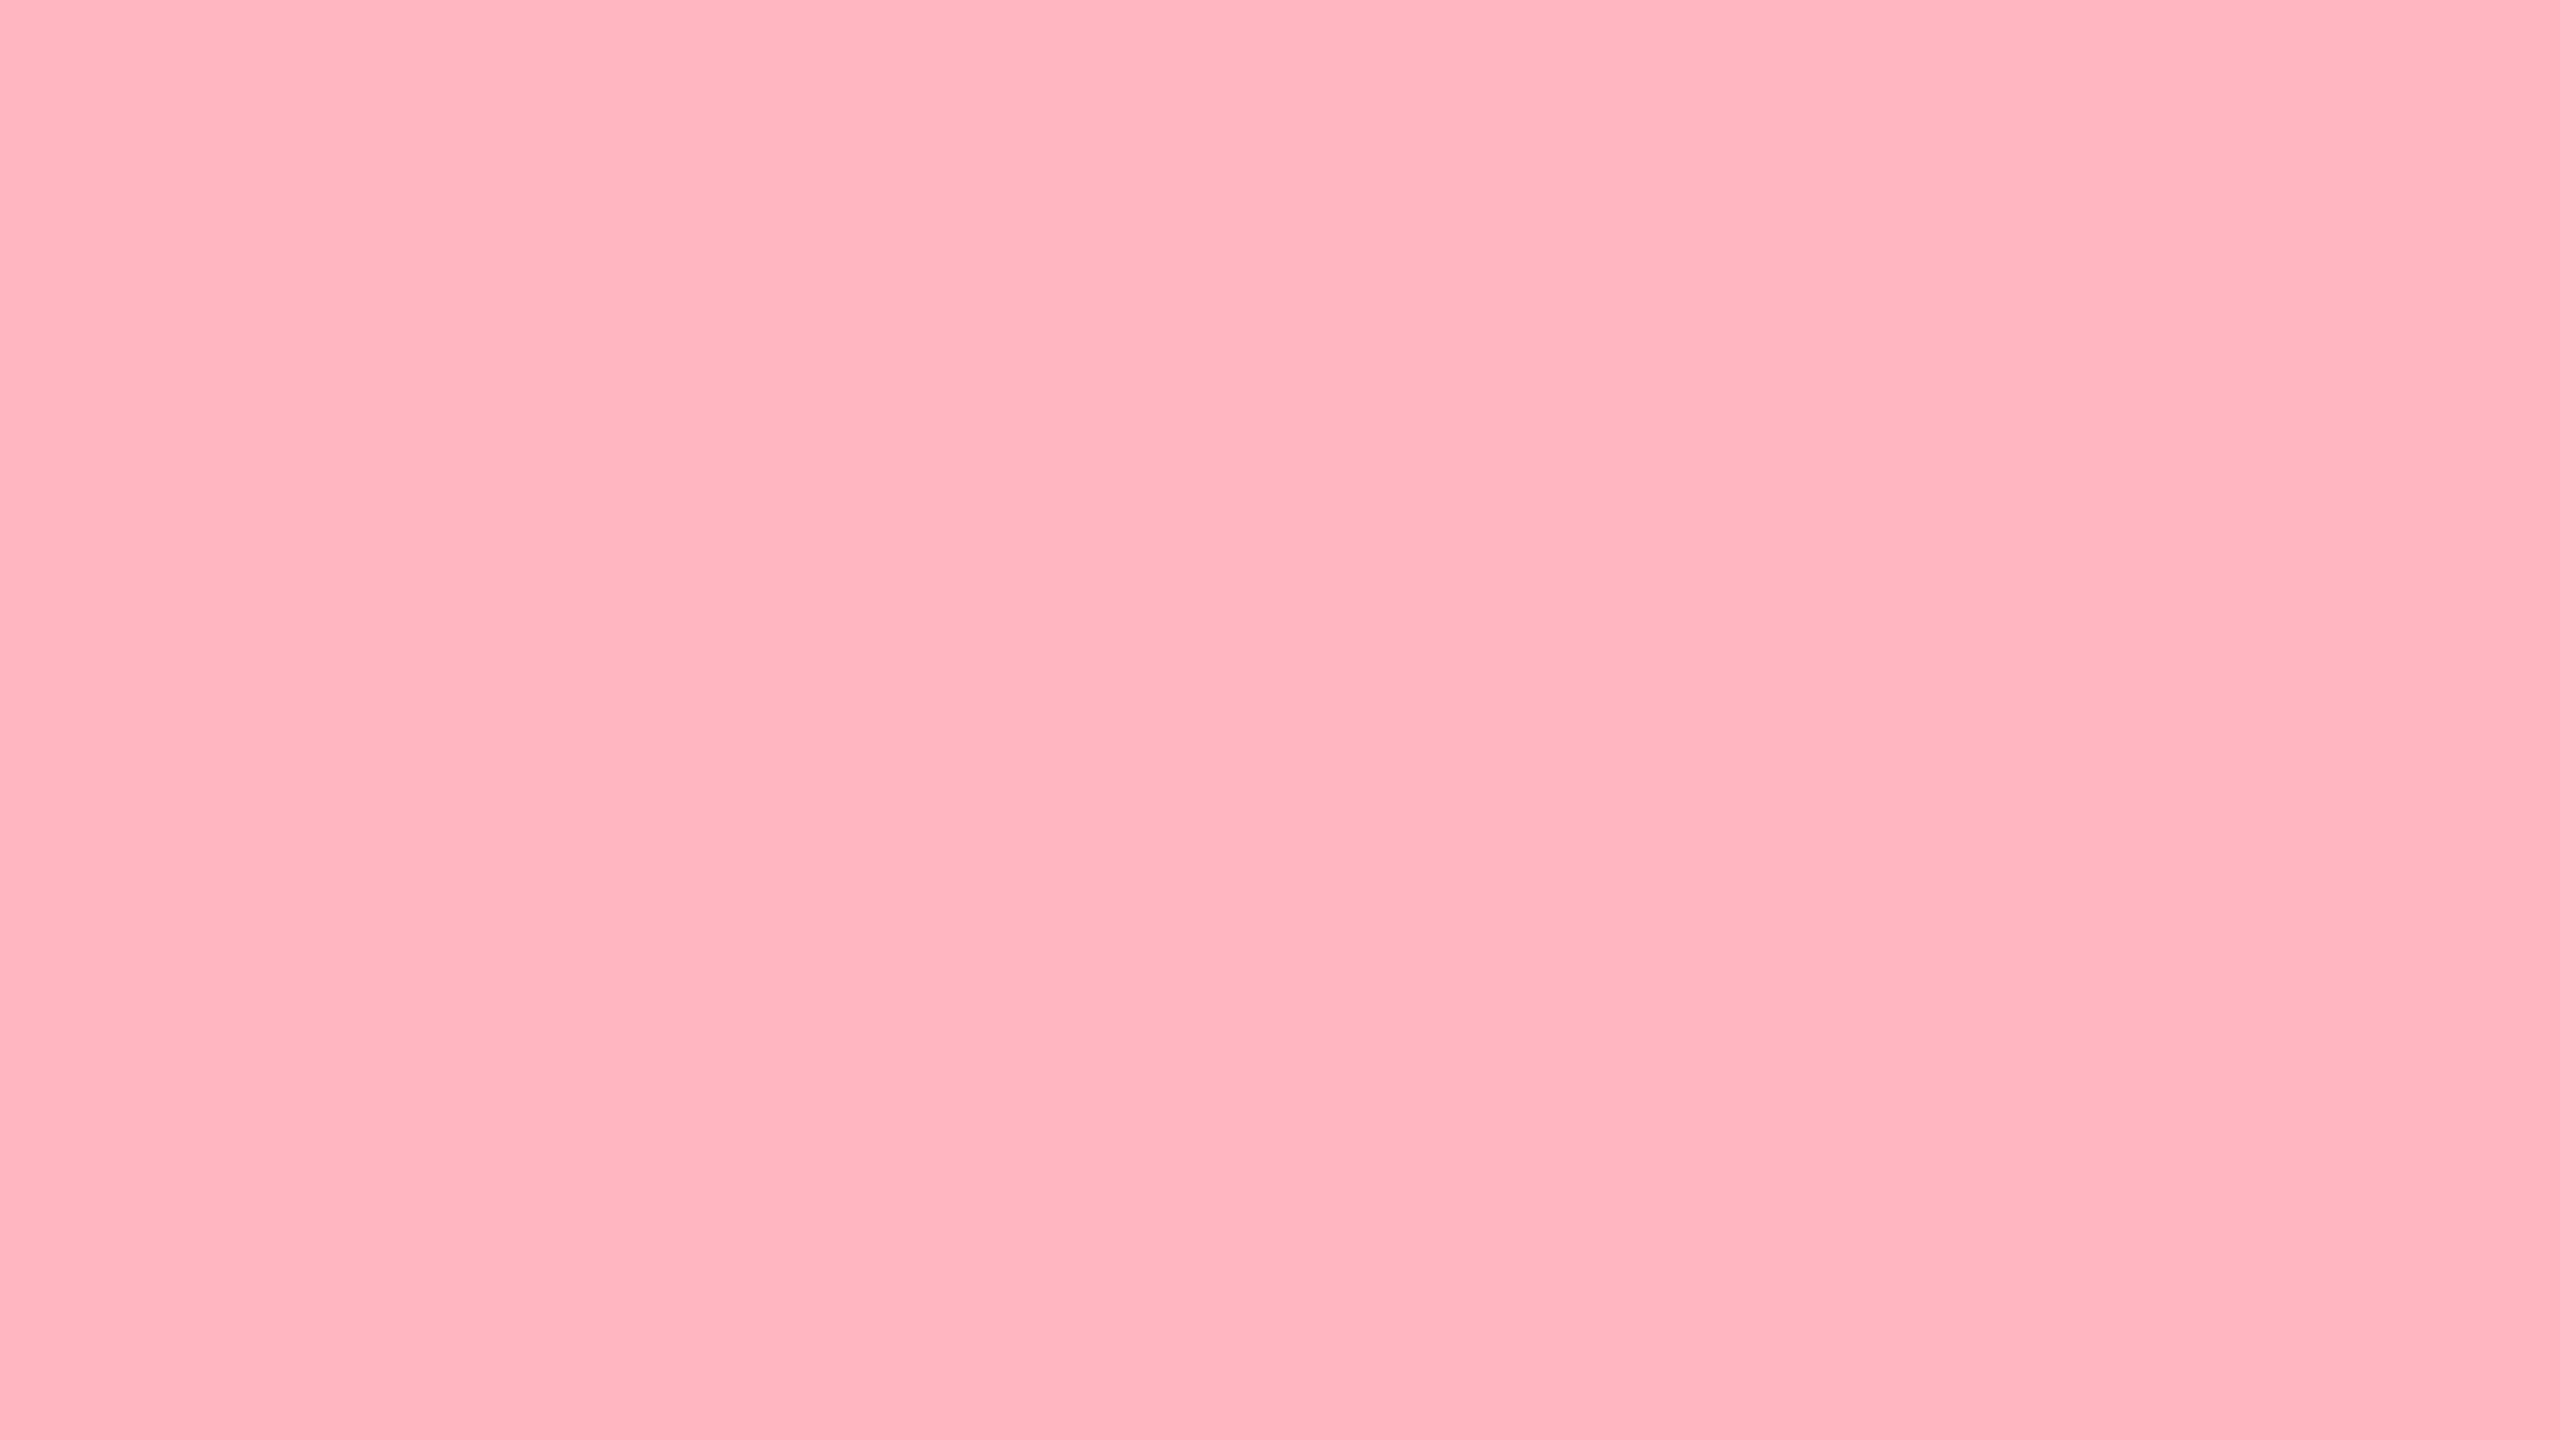 Light Pink Solid Color Wallpaper 973 2560x1440   uMadcom